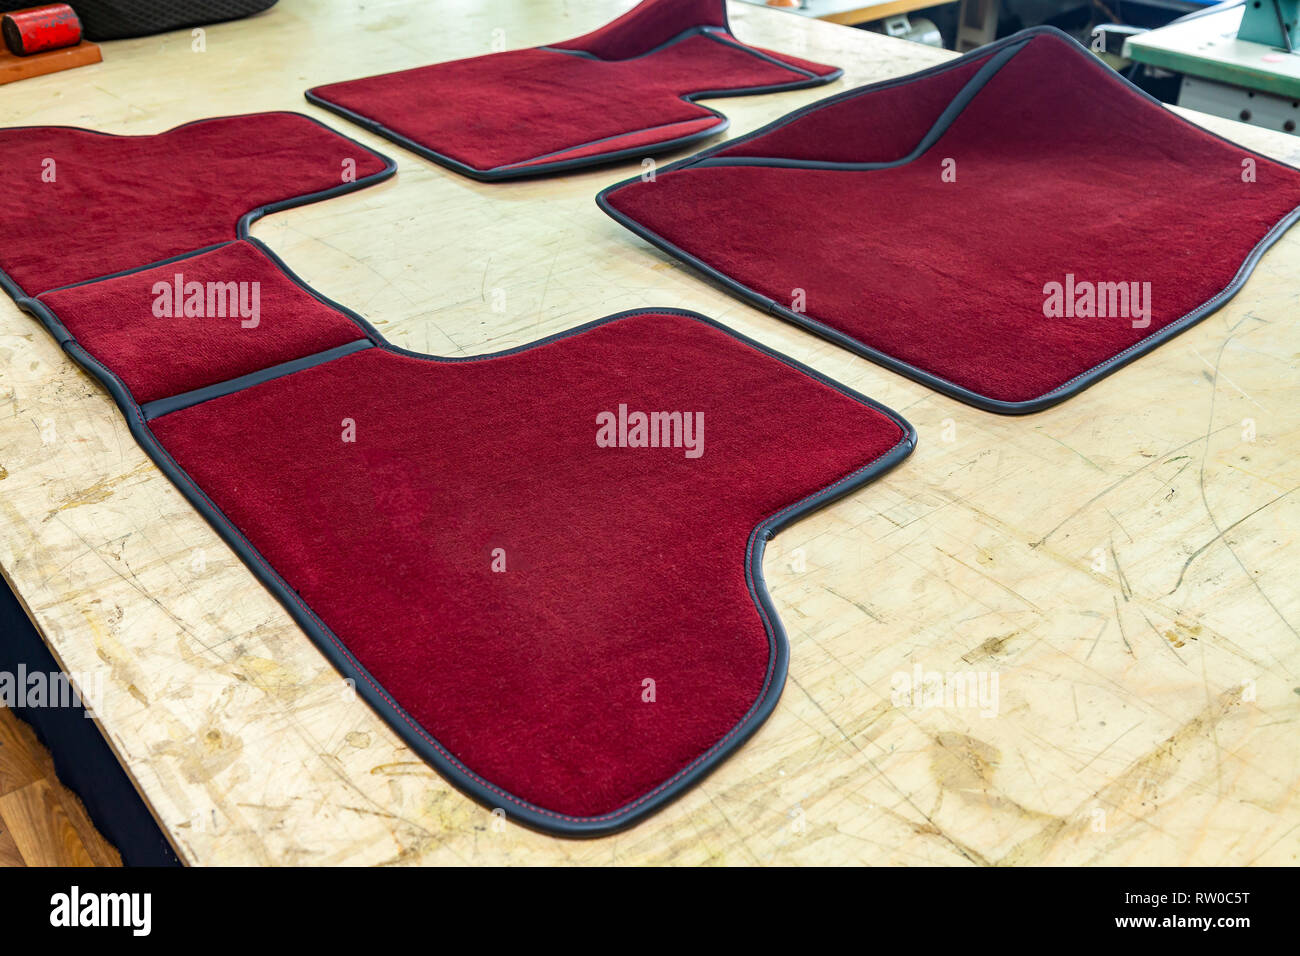 Auto 3D handgefertigte Fußmatten von roter Farbe aus Wolle für die vorderen  und hinteren Insassen eines Fahrzeugs in einem Innenraum Design Workshop  mit Tools Stockfotografie - Alamy